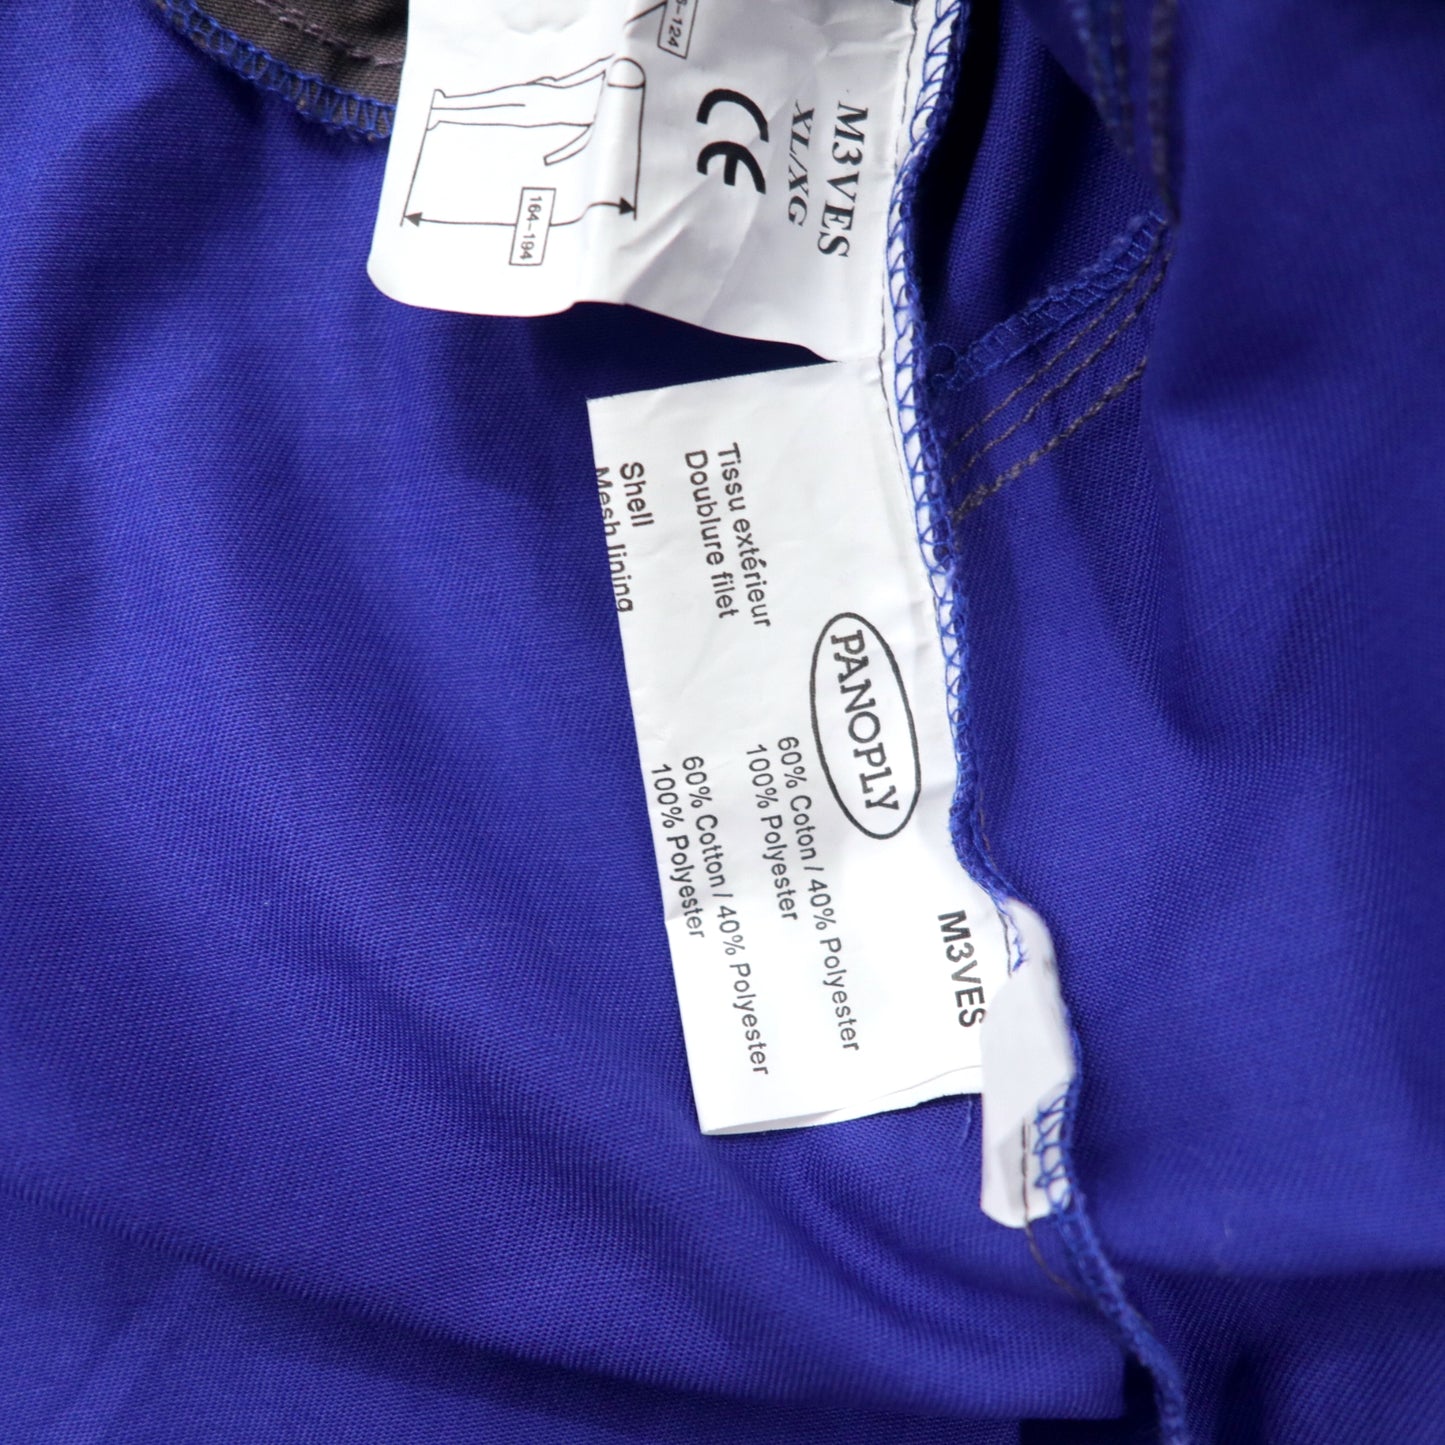 EURO WORK JACKET ユーロワークジャケット XL ブルー コットン PANOPLY 未使用品